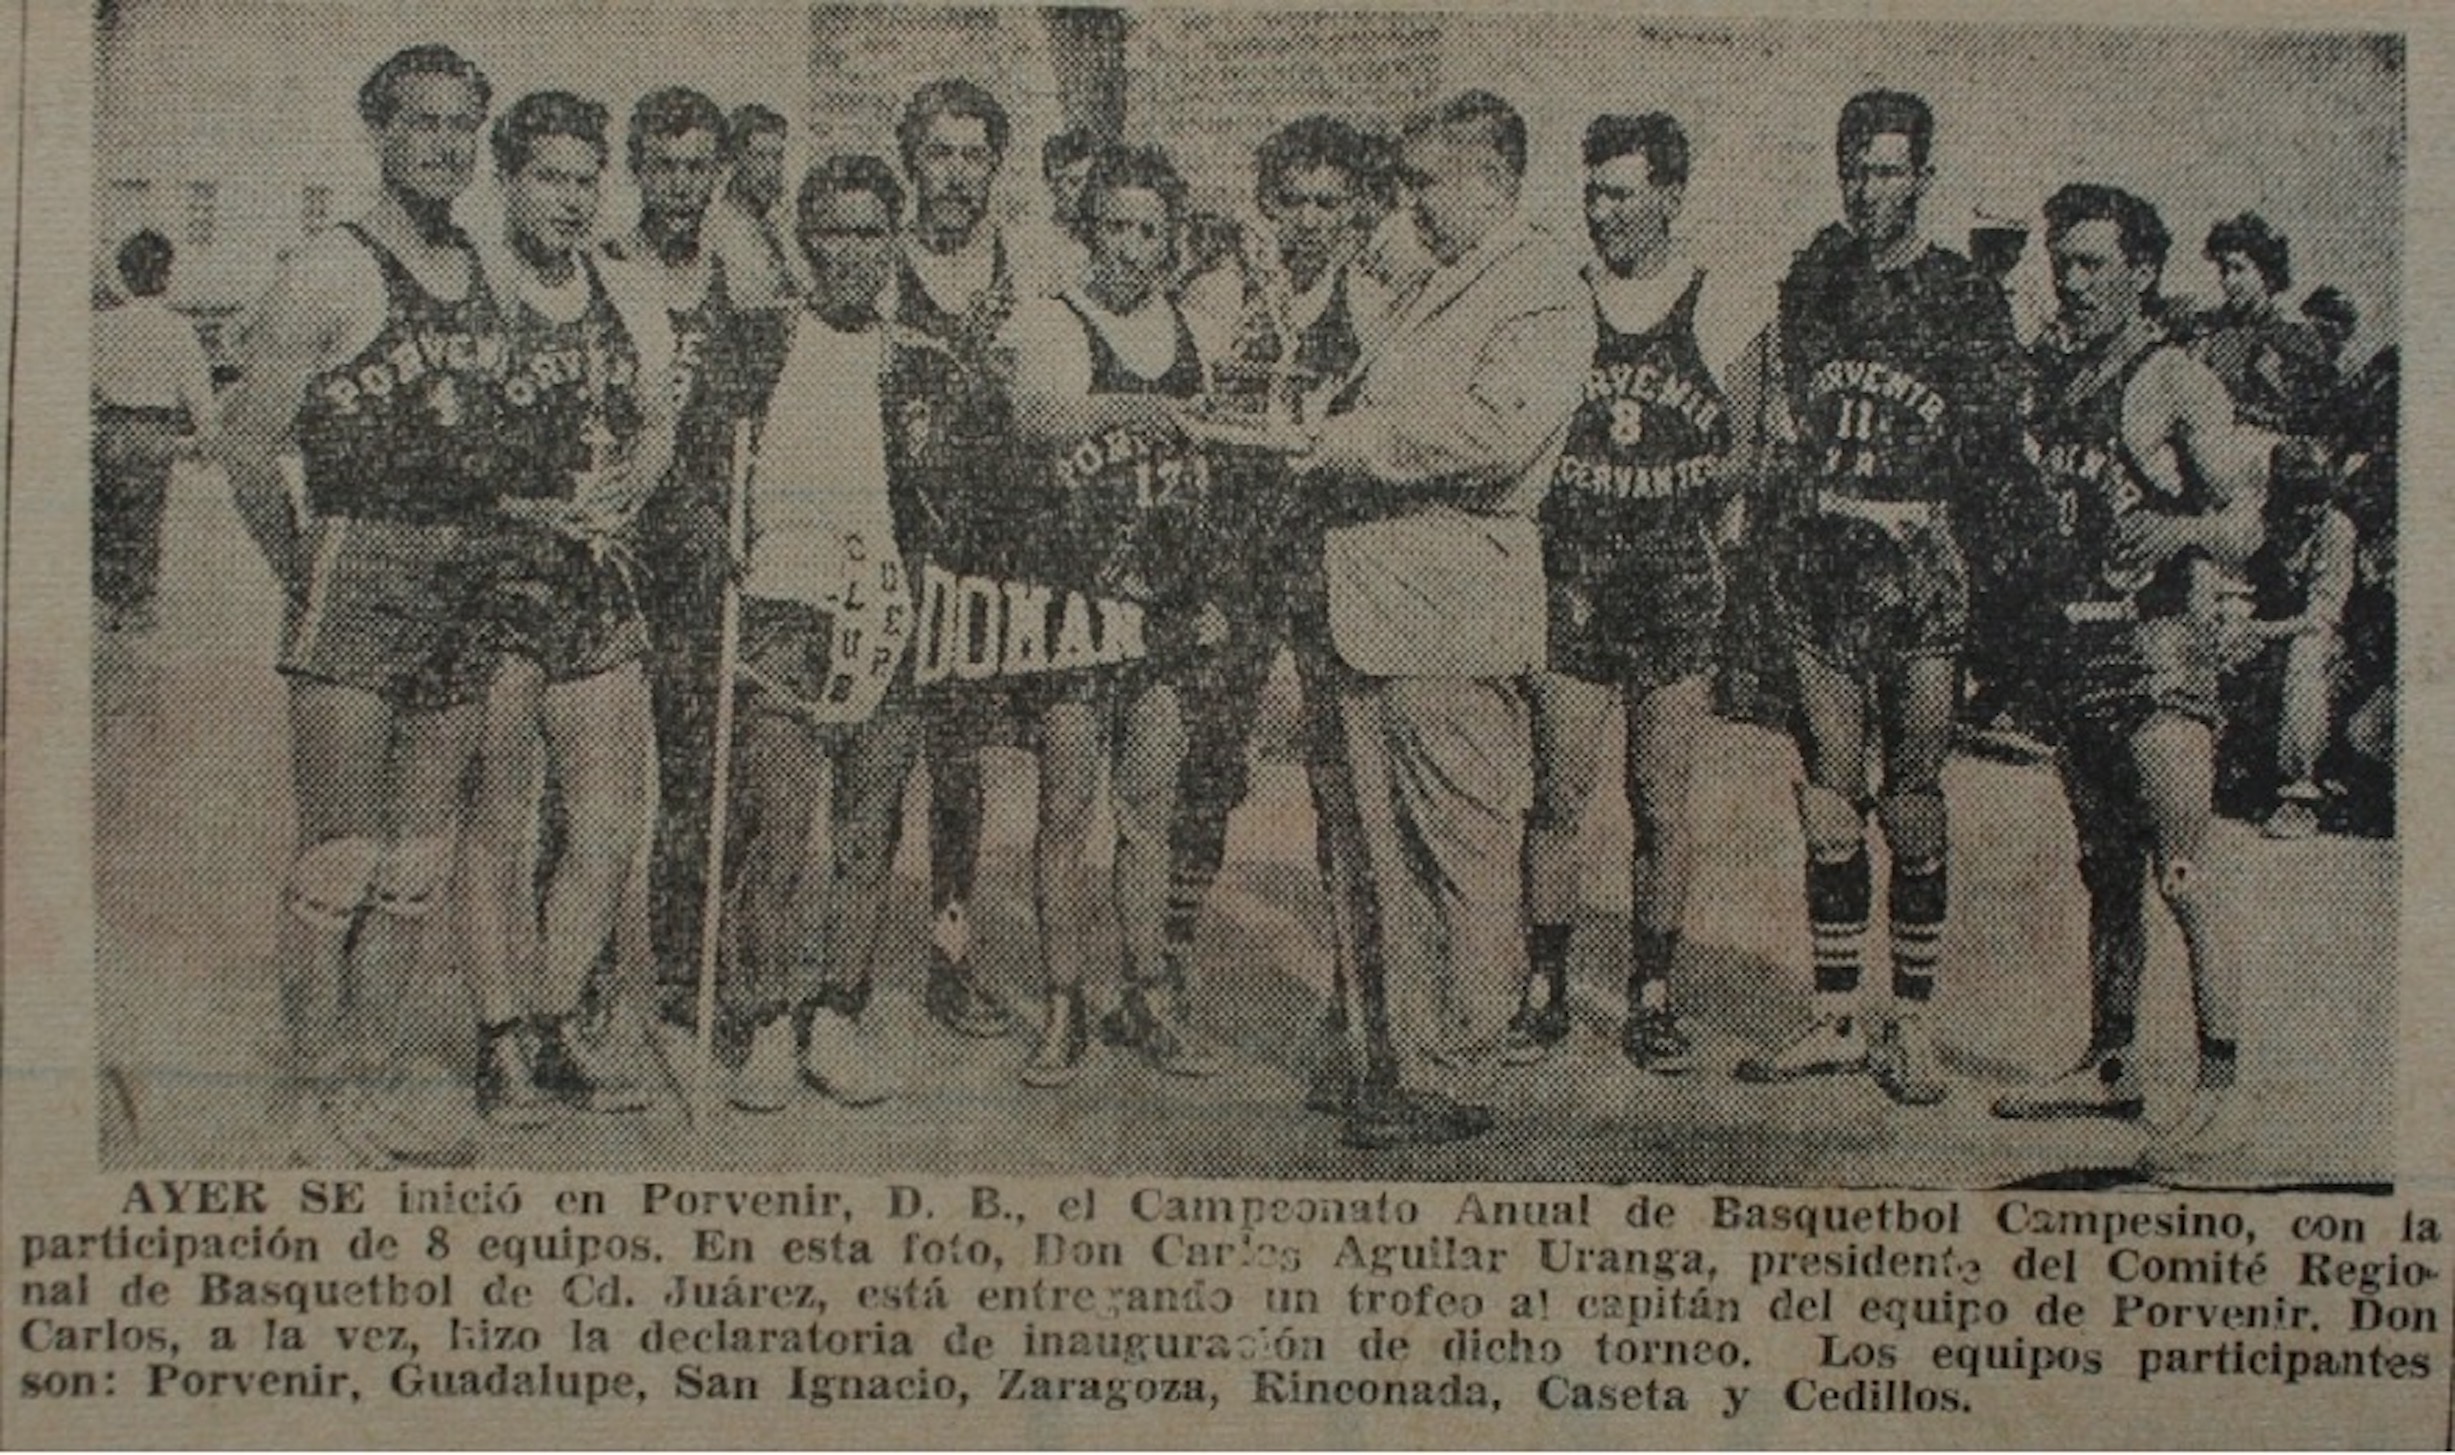 Equipo de Porvenir, 1950